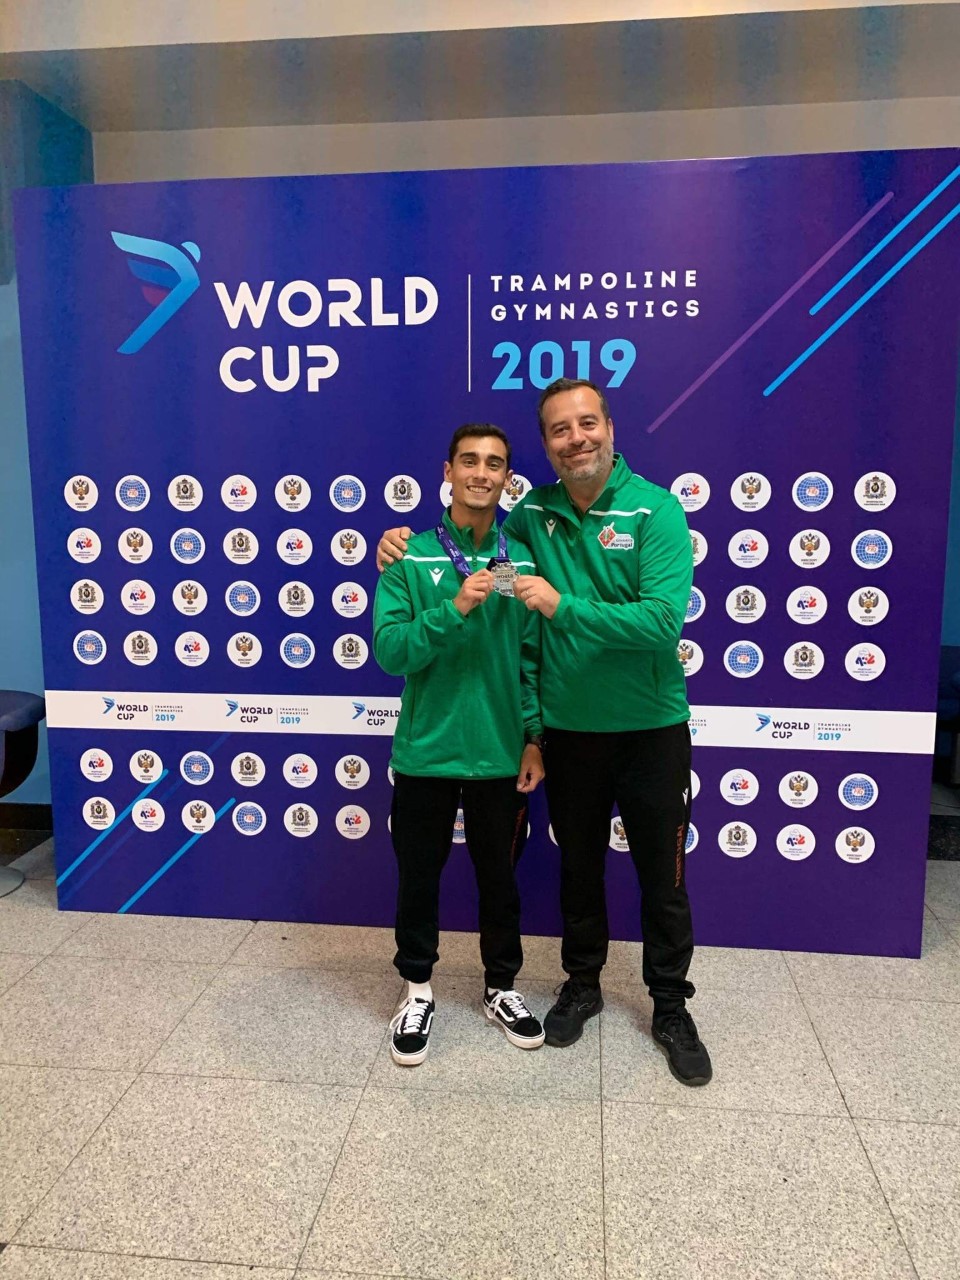 Ginástica. Diogo Costa alcança prata em duplo minitrampolim na Taça do Mundo